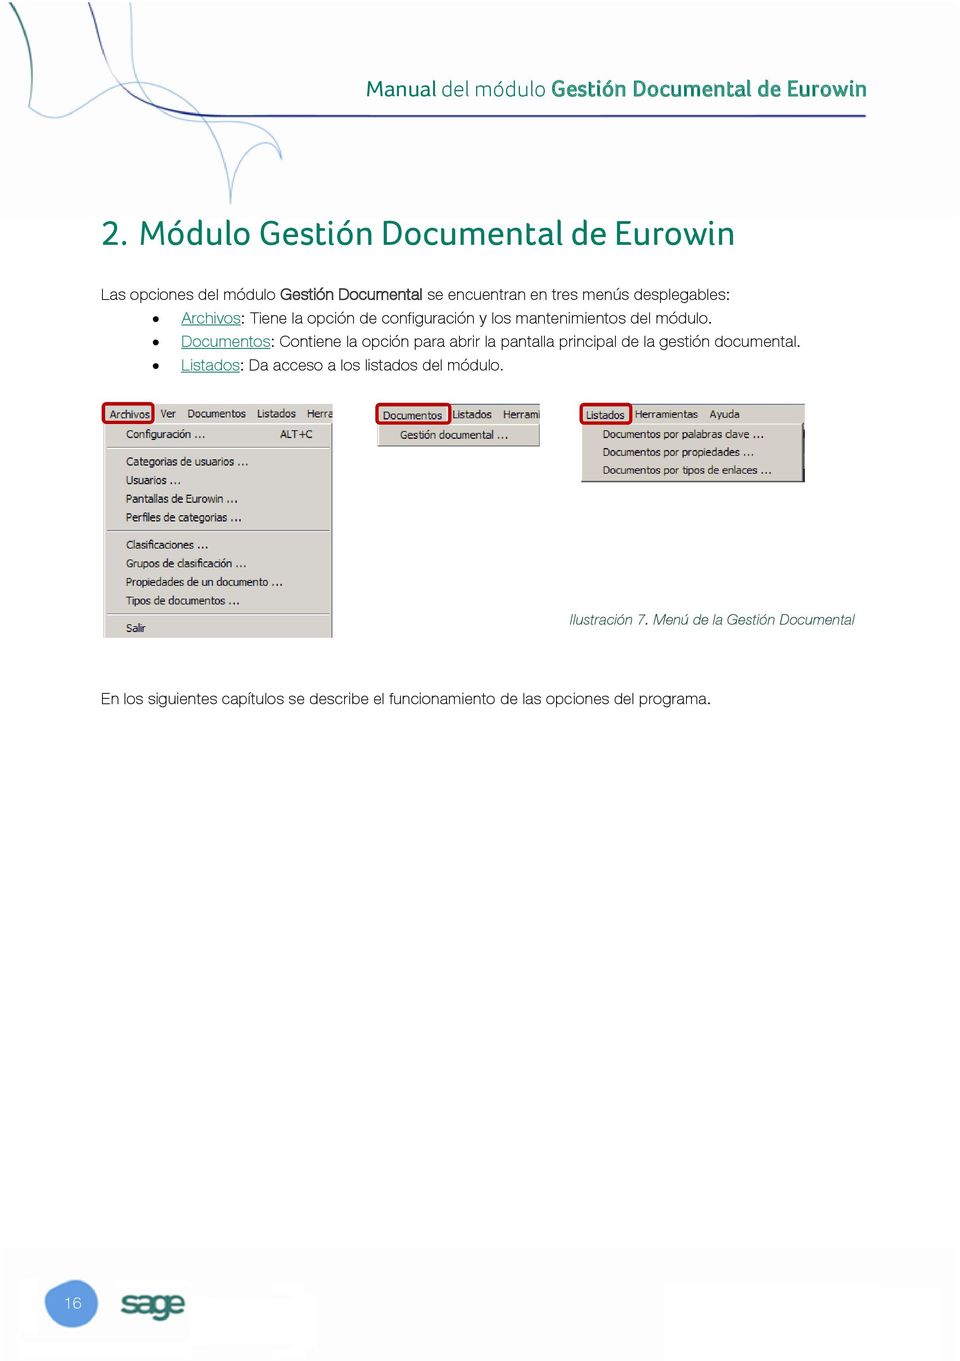 Documentos: Contiene la opción para abrir la pantalla principal de la gestión documental.